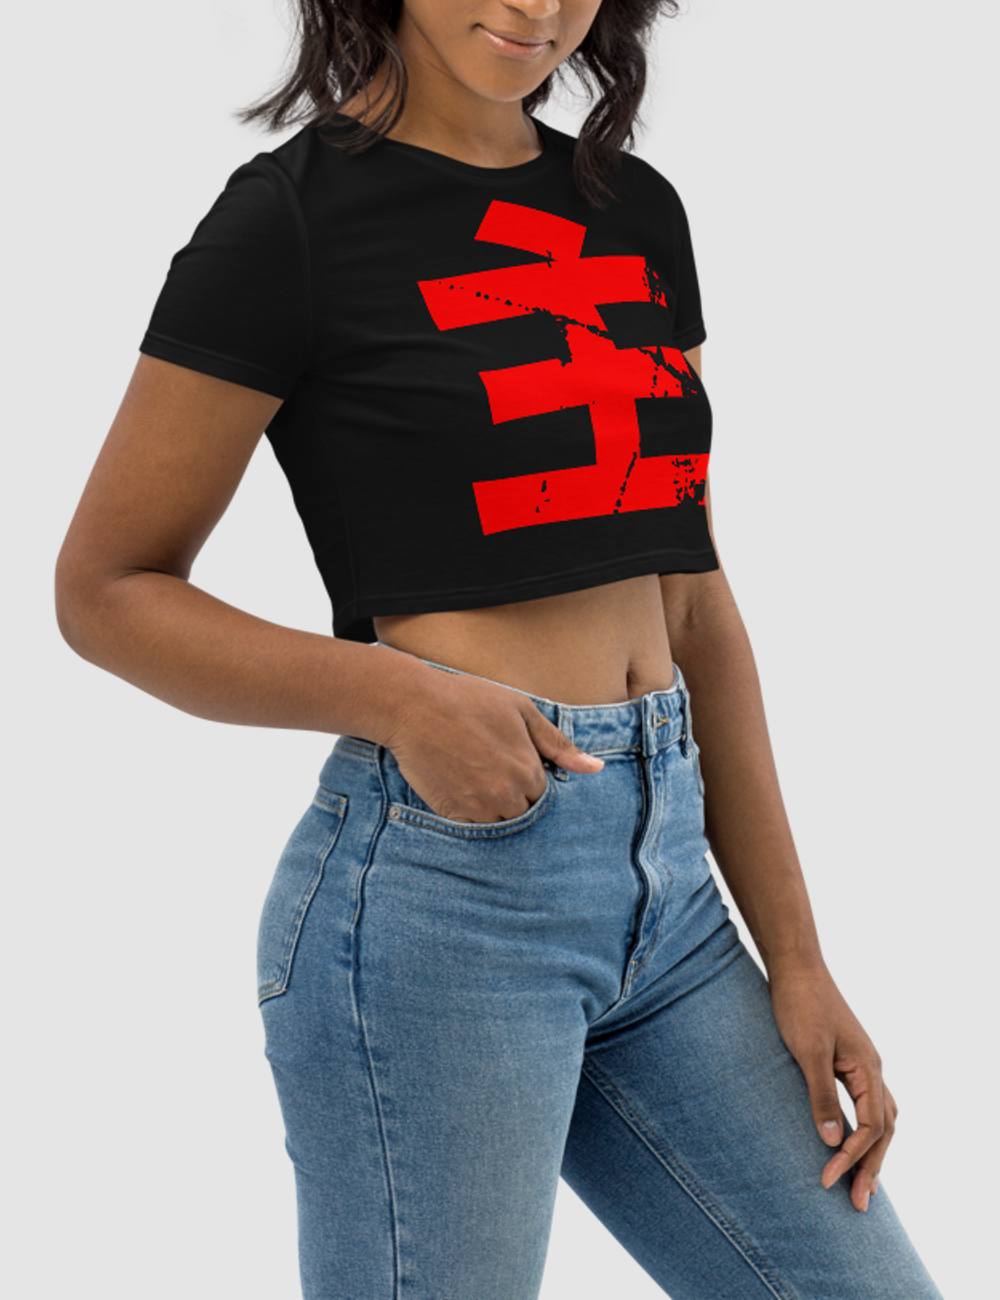 Lord Kanji Women's Fitted Crop Top T-Shirt OniTakai